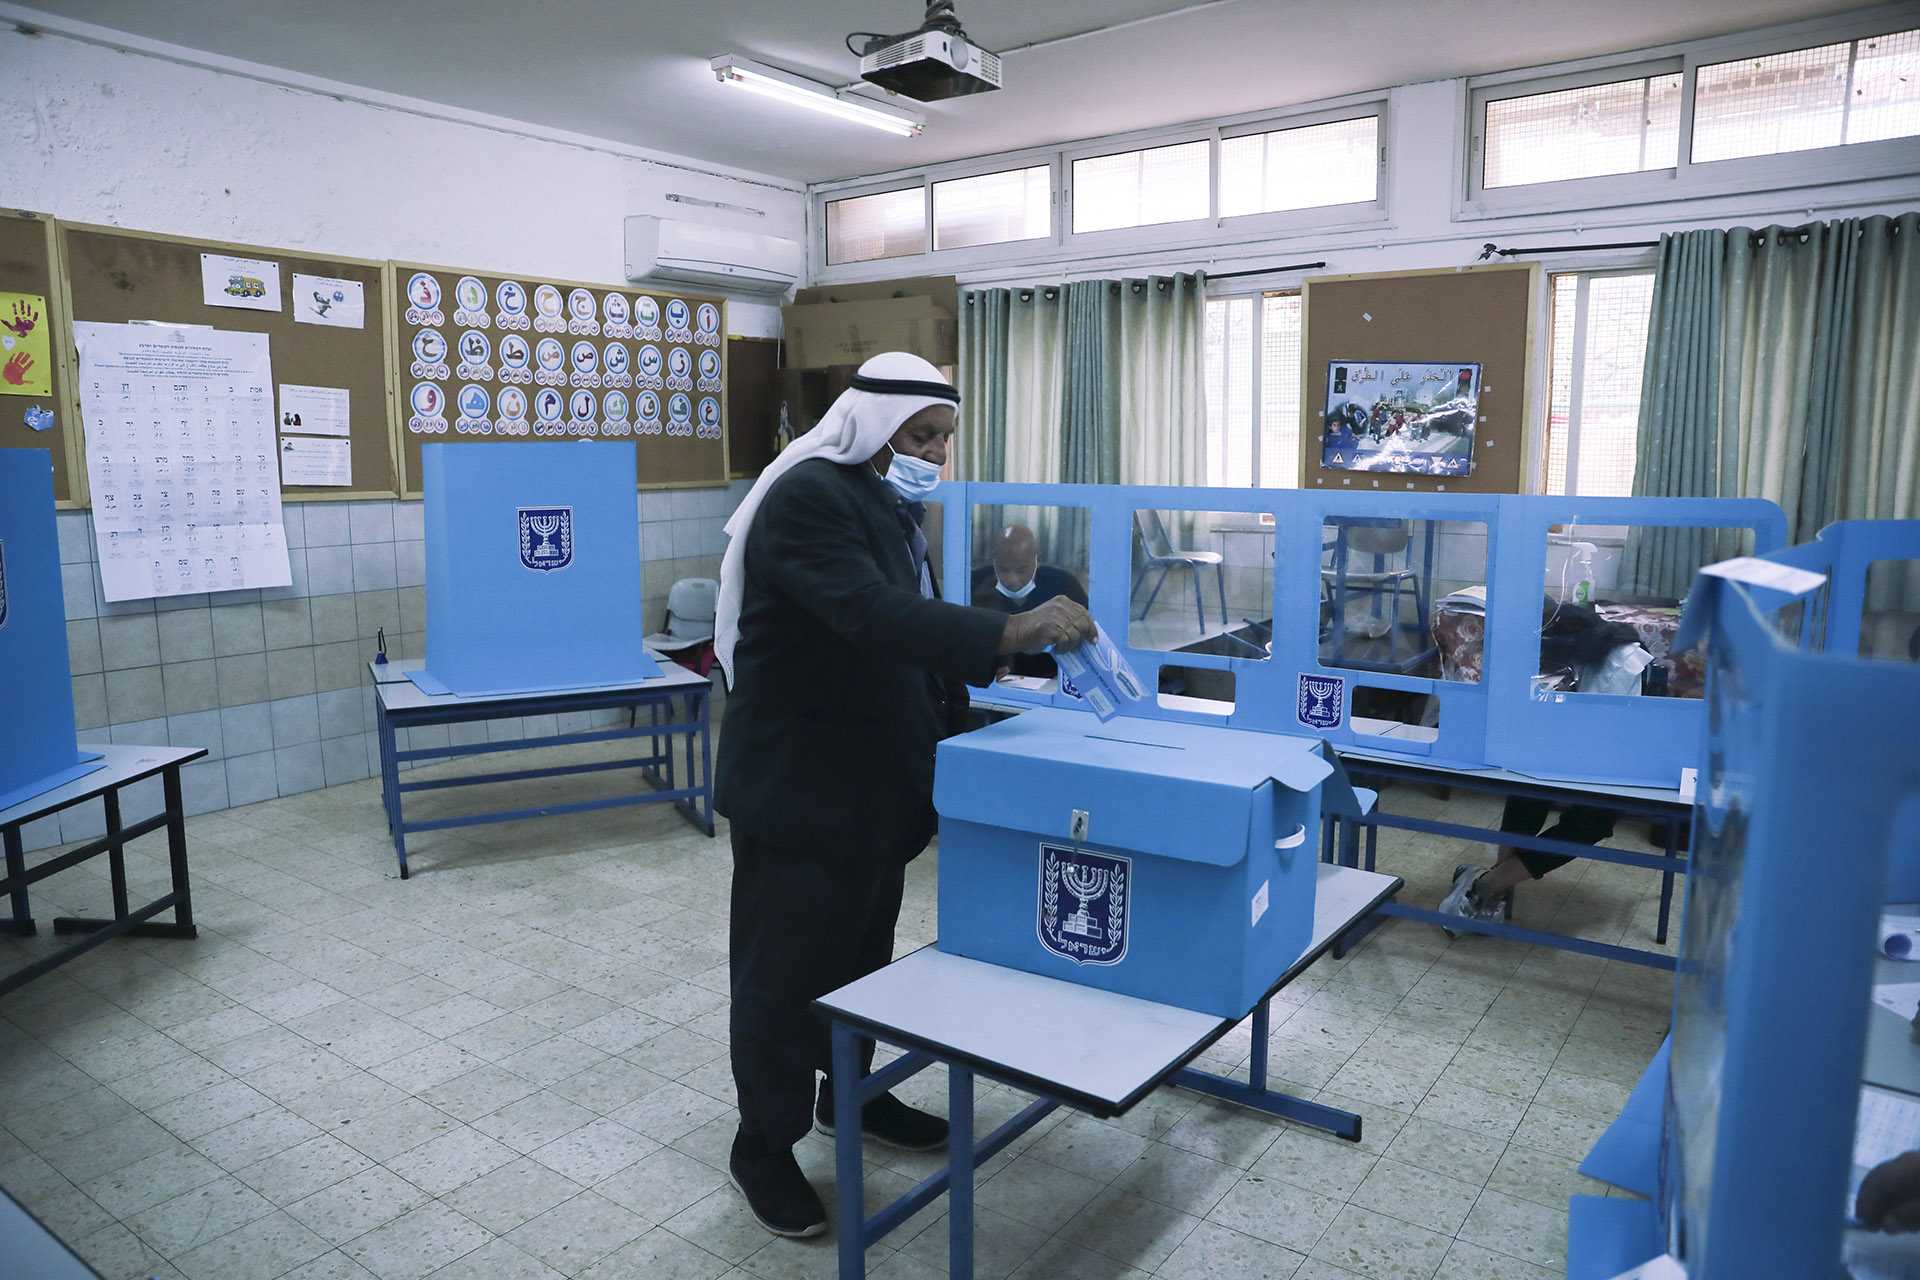 Megvan az izraeli választások időpontja